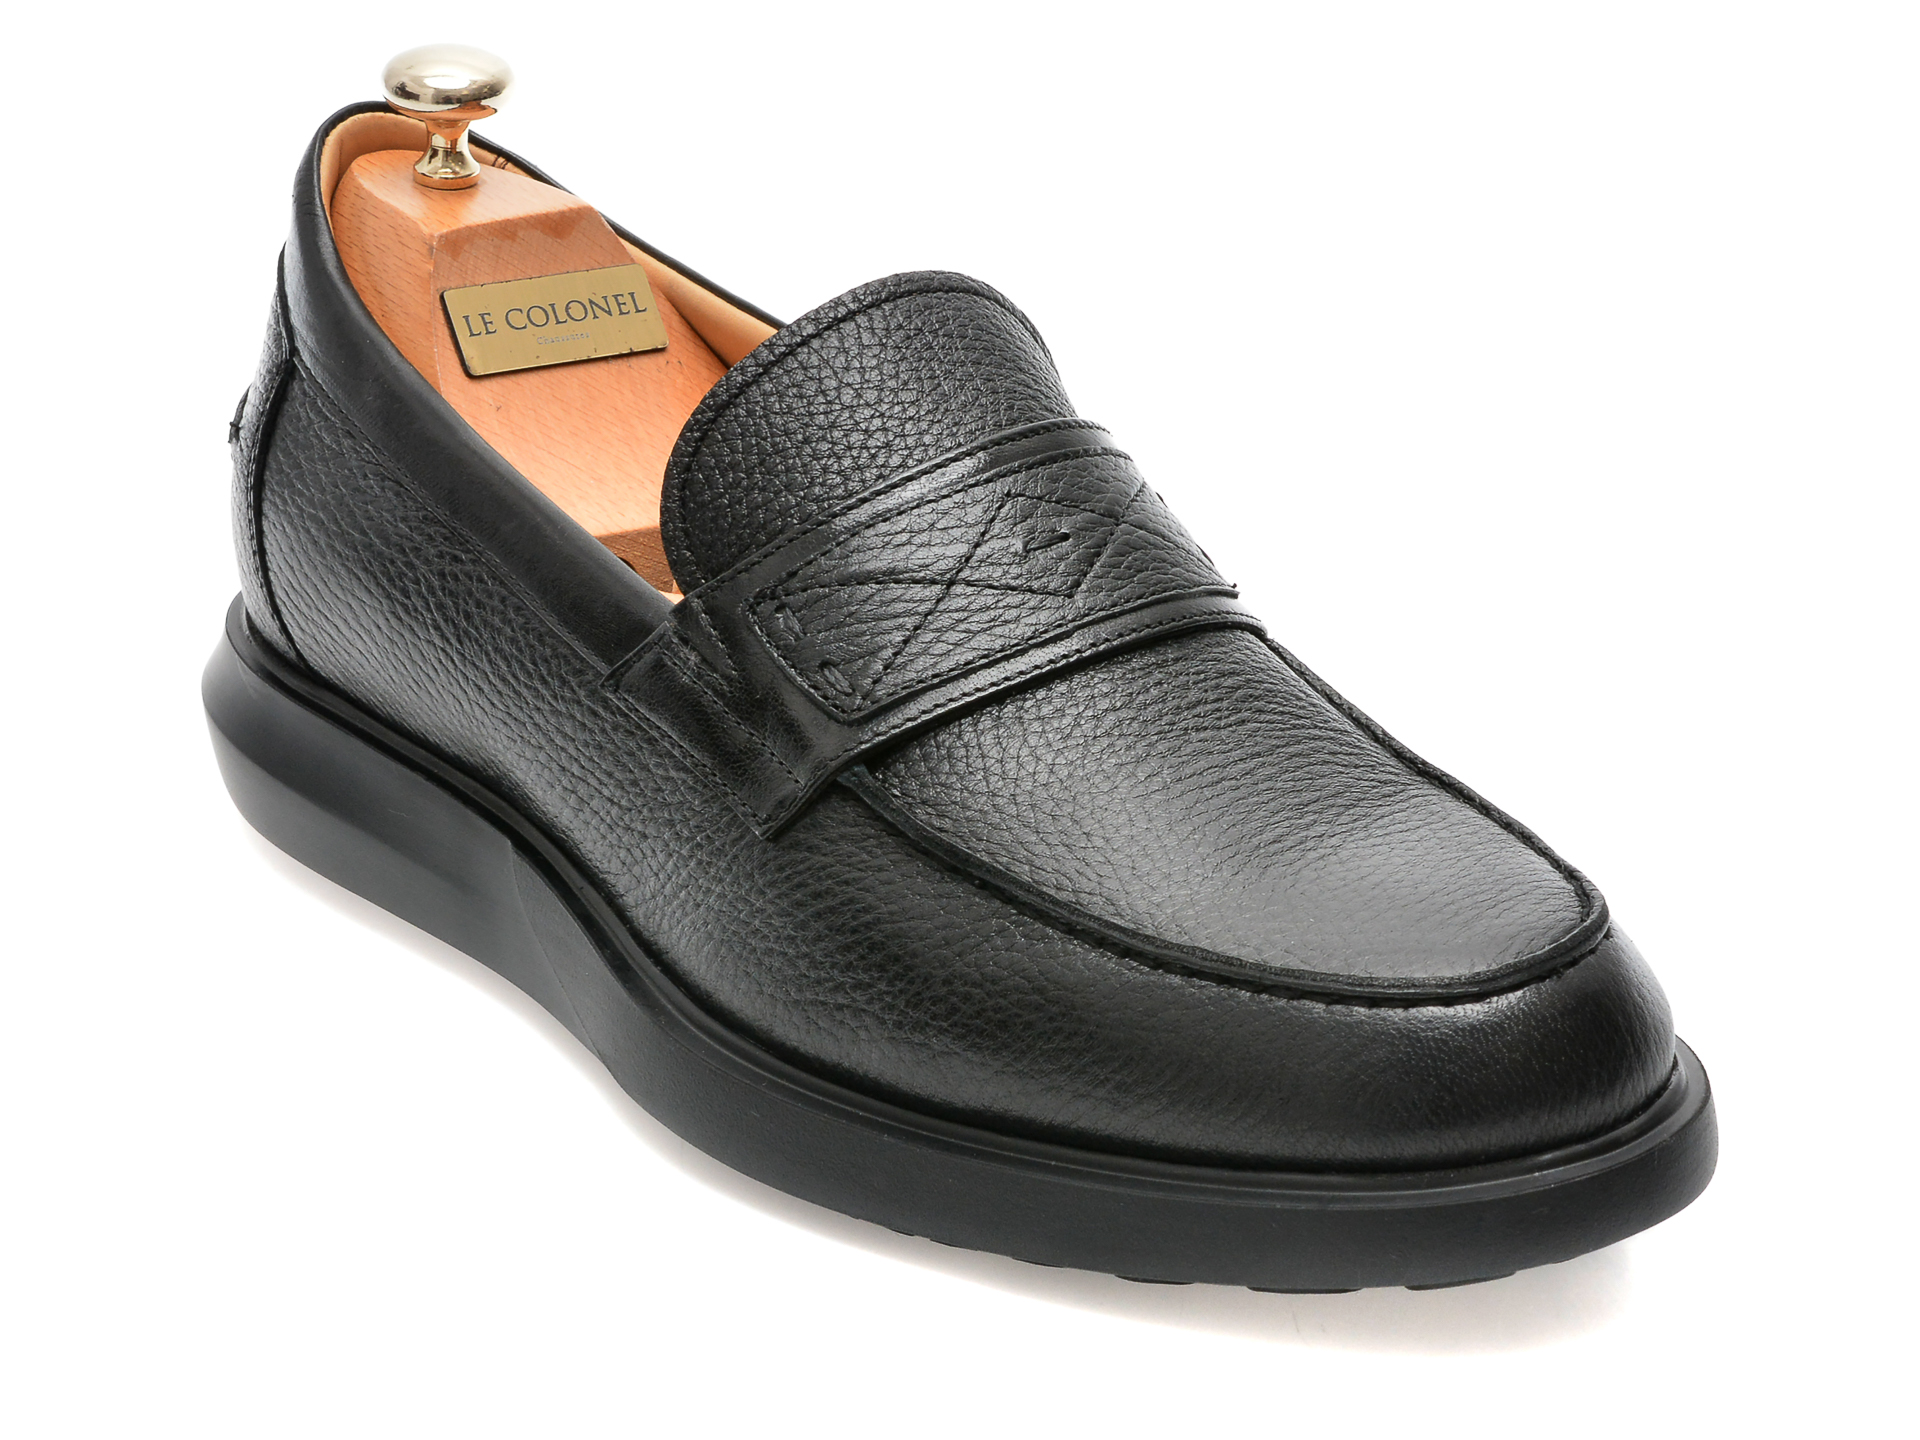 Pantofi LE COLONEL negri, 66616, din piele naturala Le Colonel